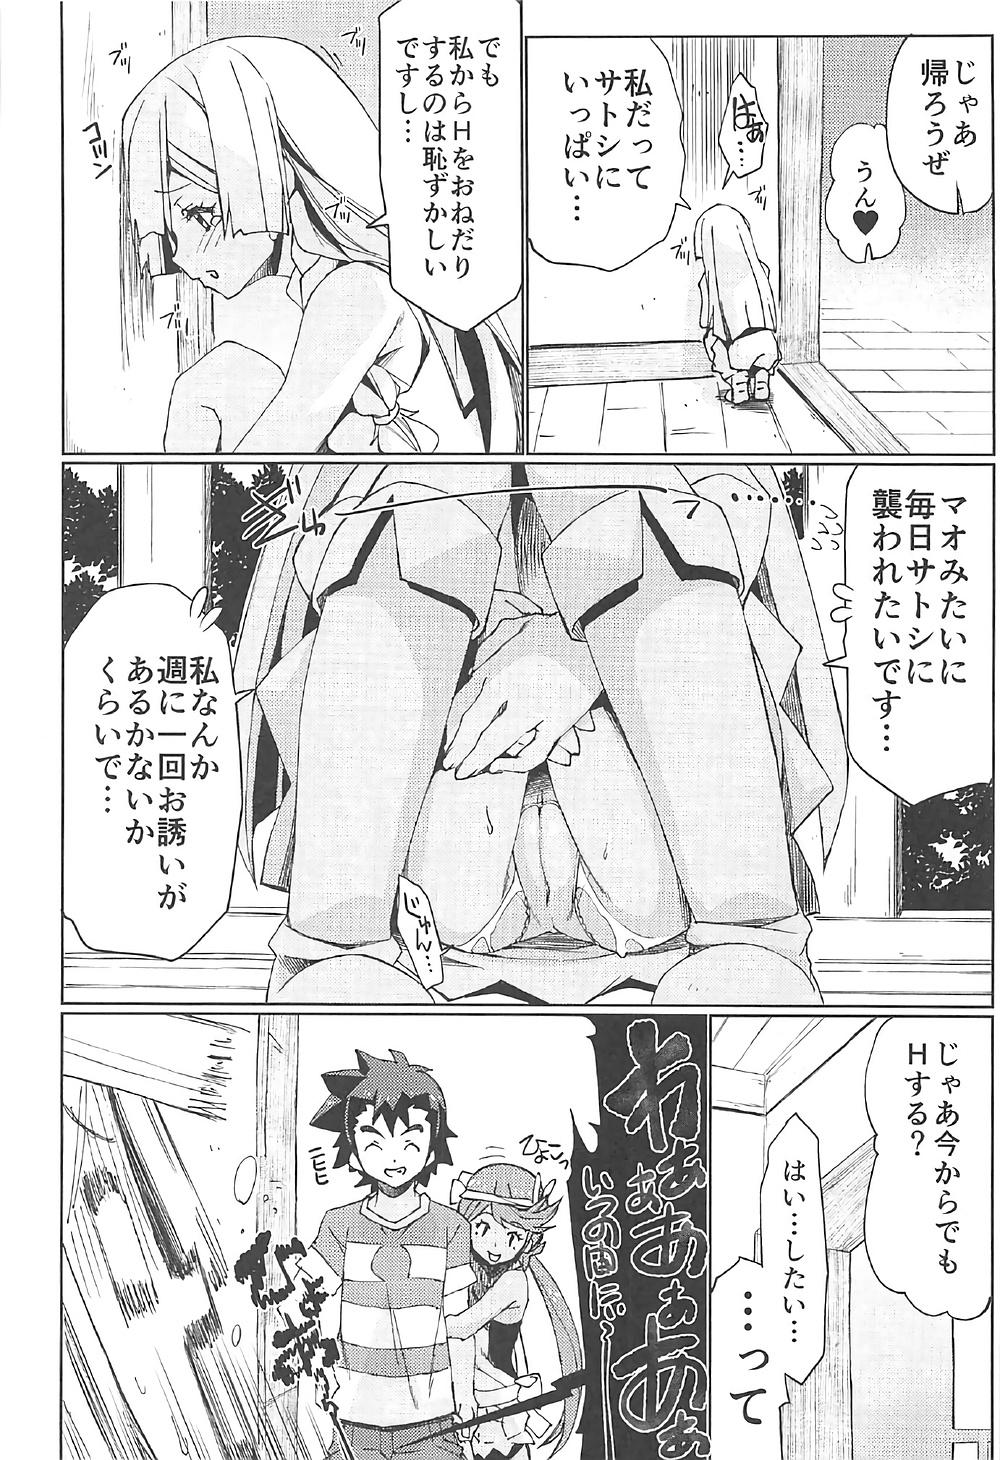 Peru Watashi ga sono Ki ni nareba Ronriteki ni! 2!! - Pokemon Rope - Page 9